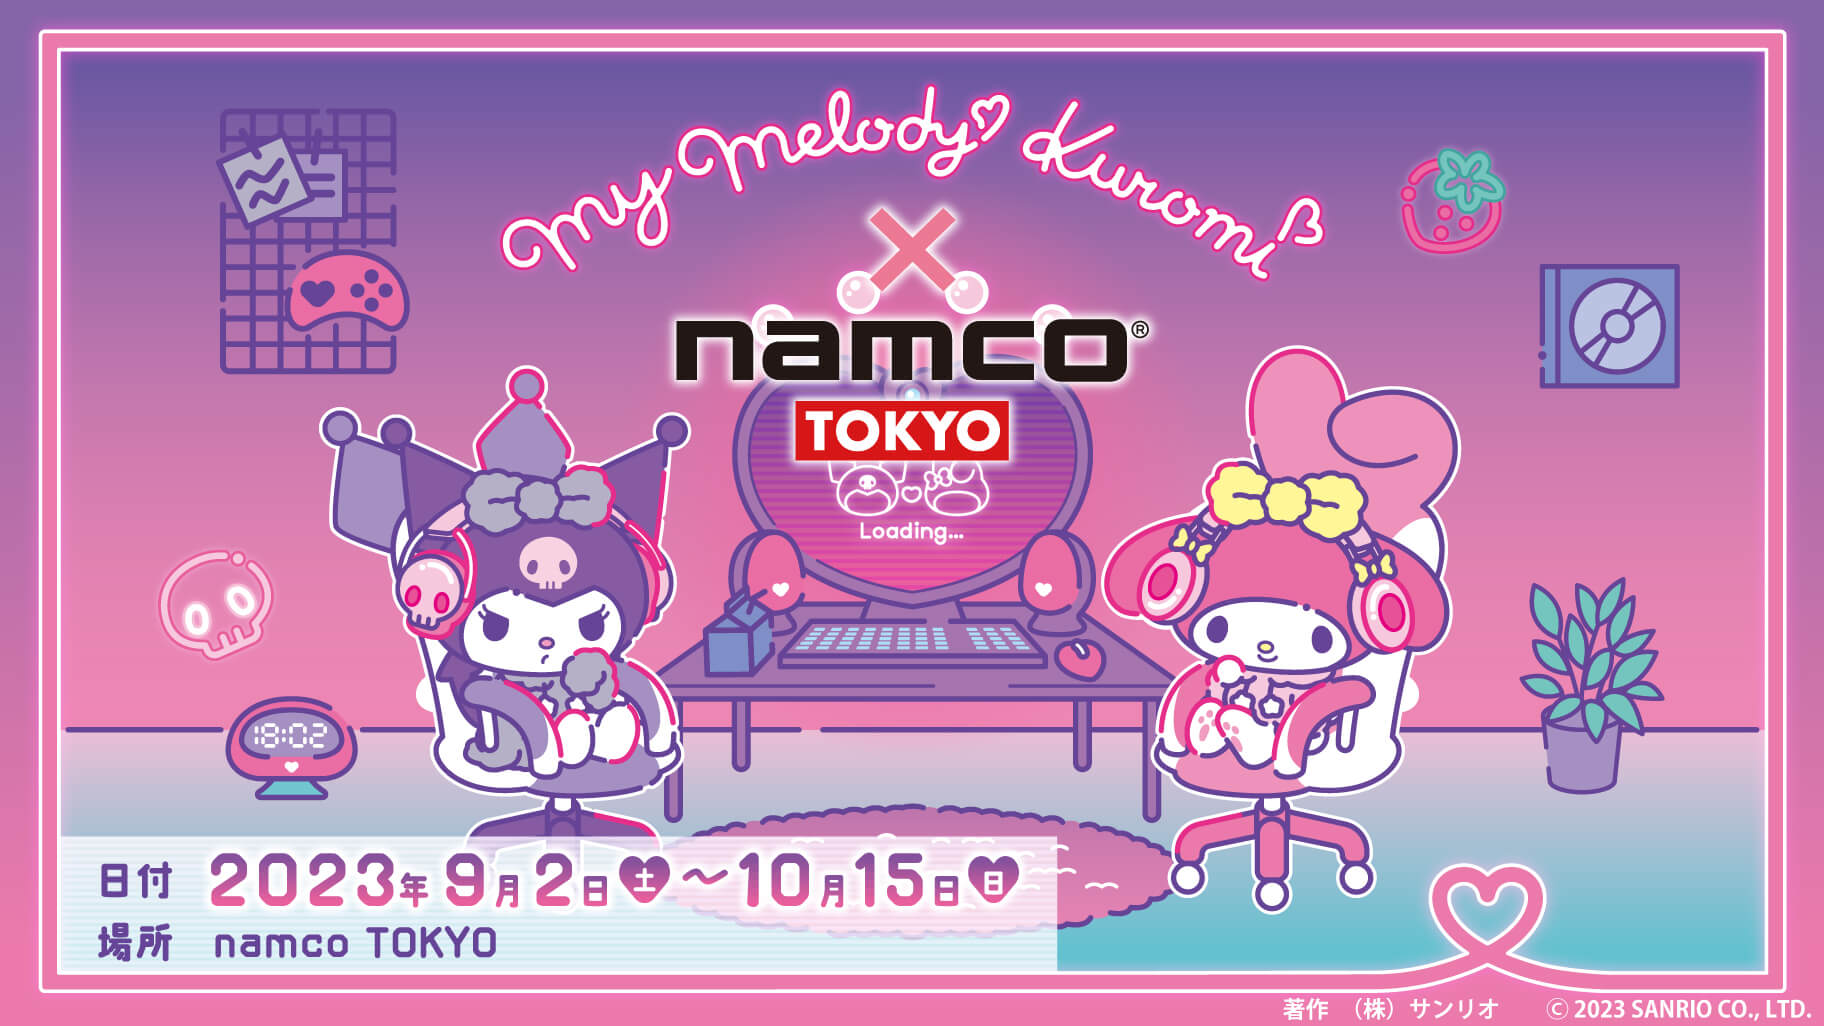 マイメロディ & クロミ × namco TOKYO 9月2日よりコラボイベント開催!